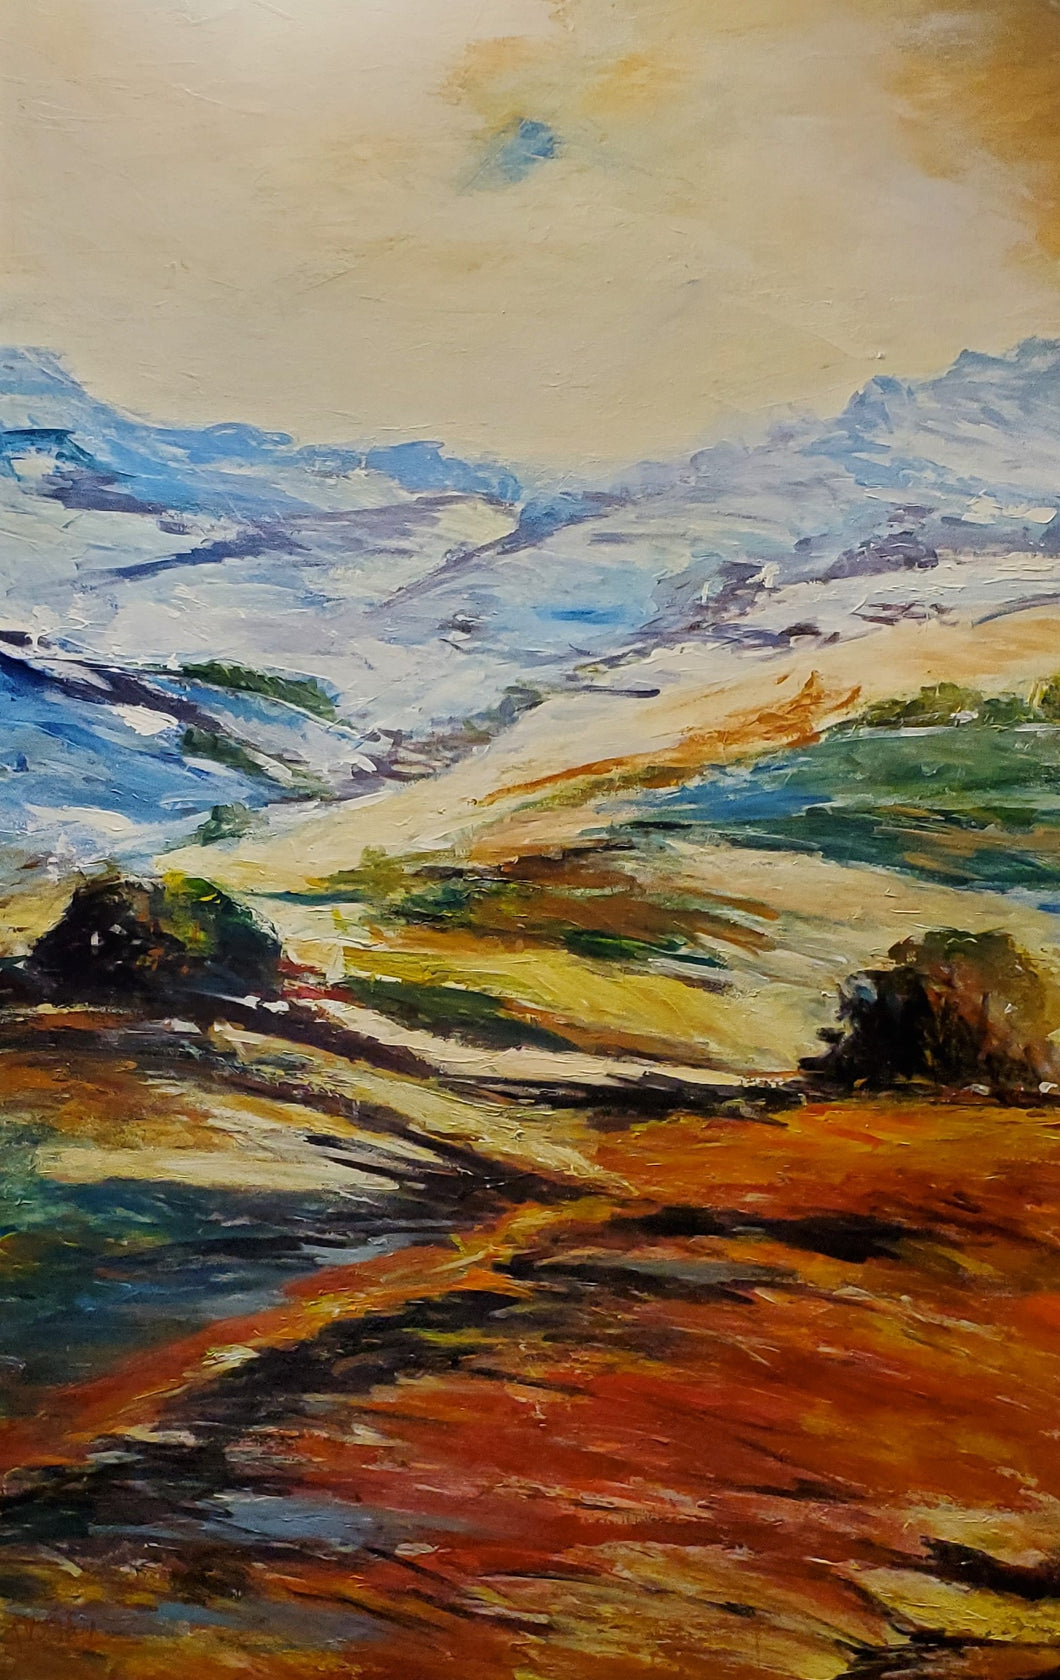 AROMAZ, Carlos - Les plaines des Rocheuses - Oil on canvas, 72x48